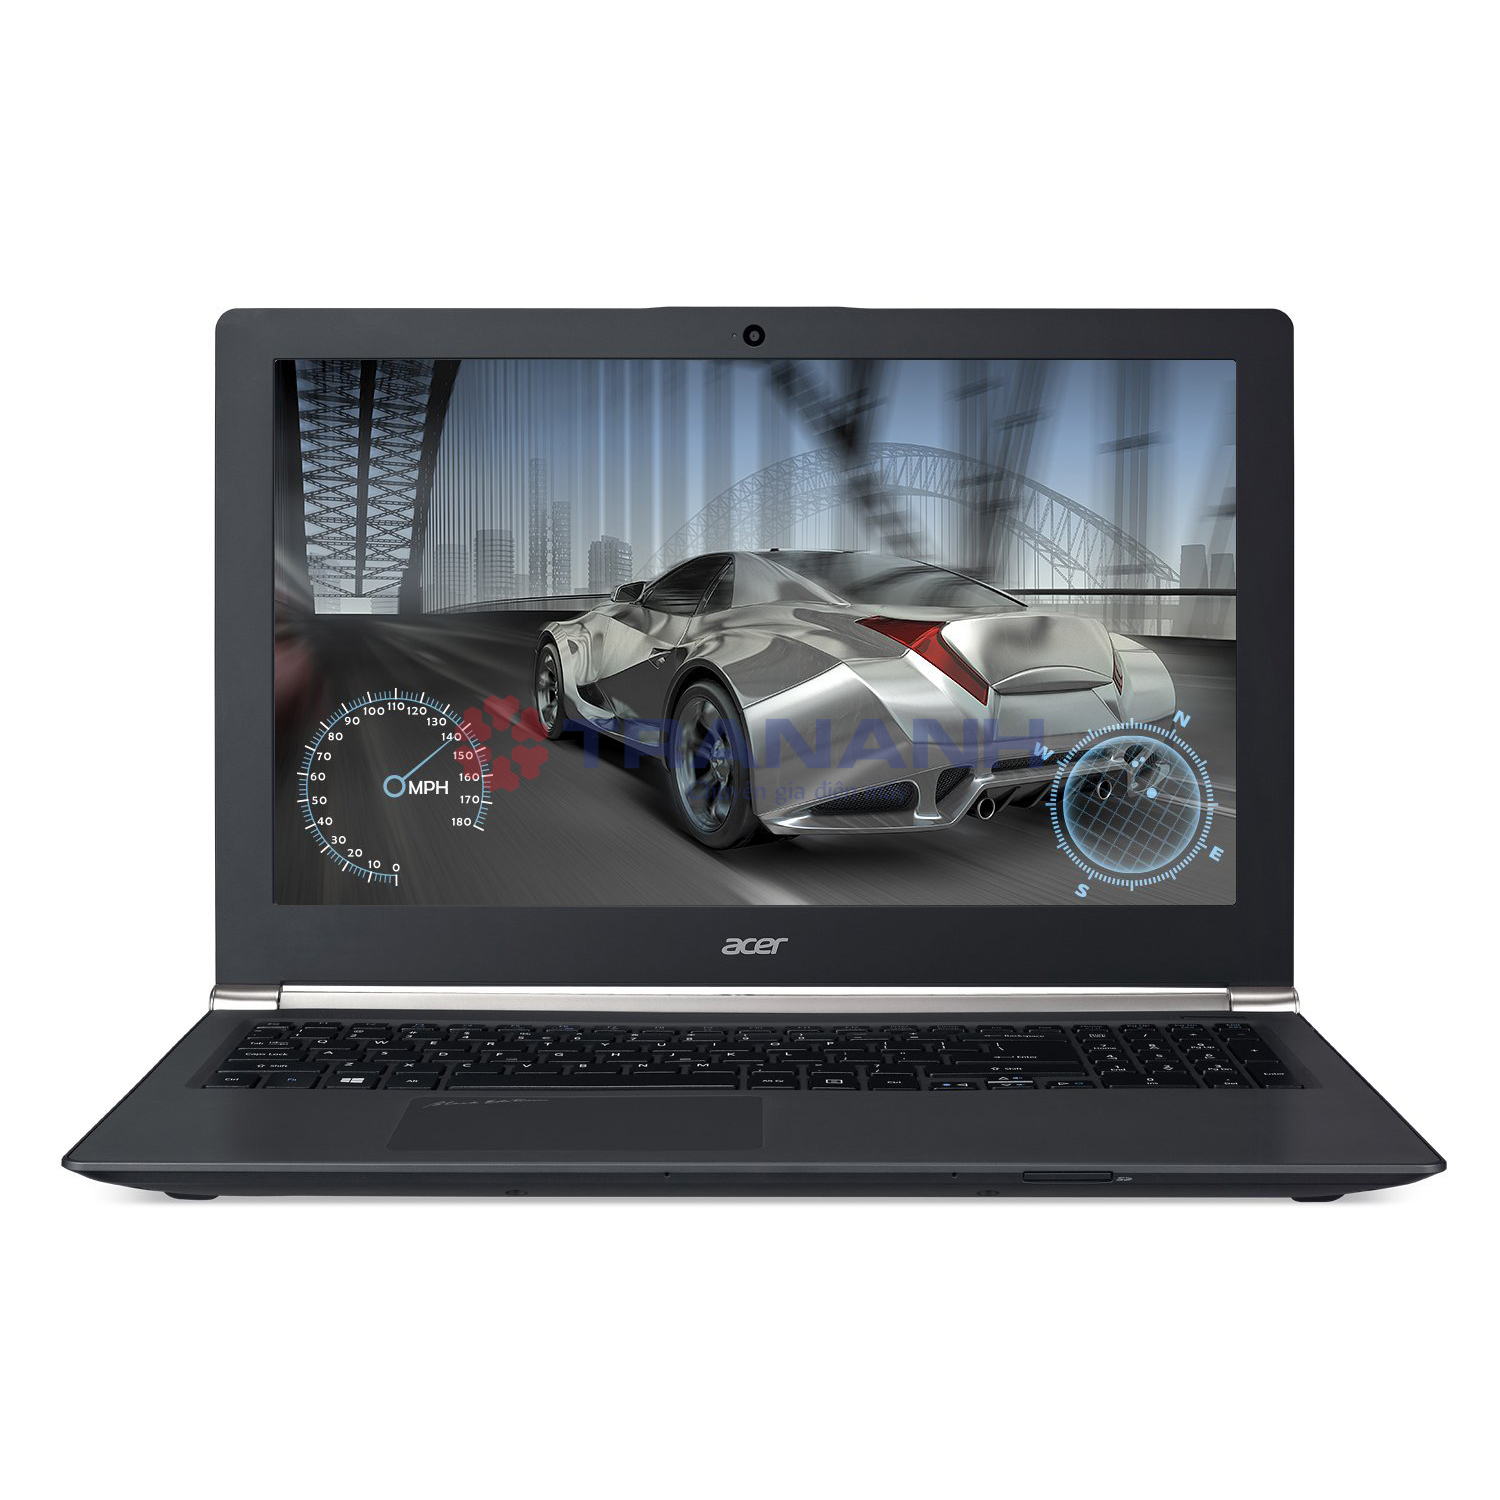 Laptop Acer Nitro VN7-571G-58CT - Intel Core i5-5200U 2.2GHz, 4GB RAM, 1TB HDD, Nvidia Geforce GTX 850M 4GB, 15.6inch